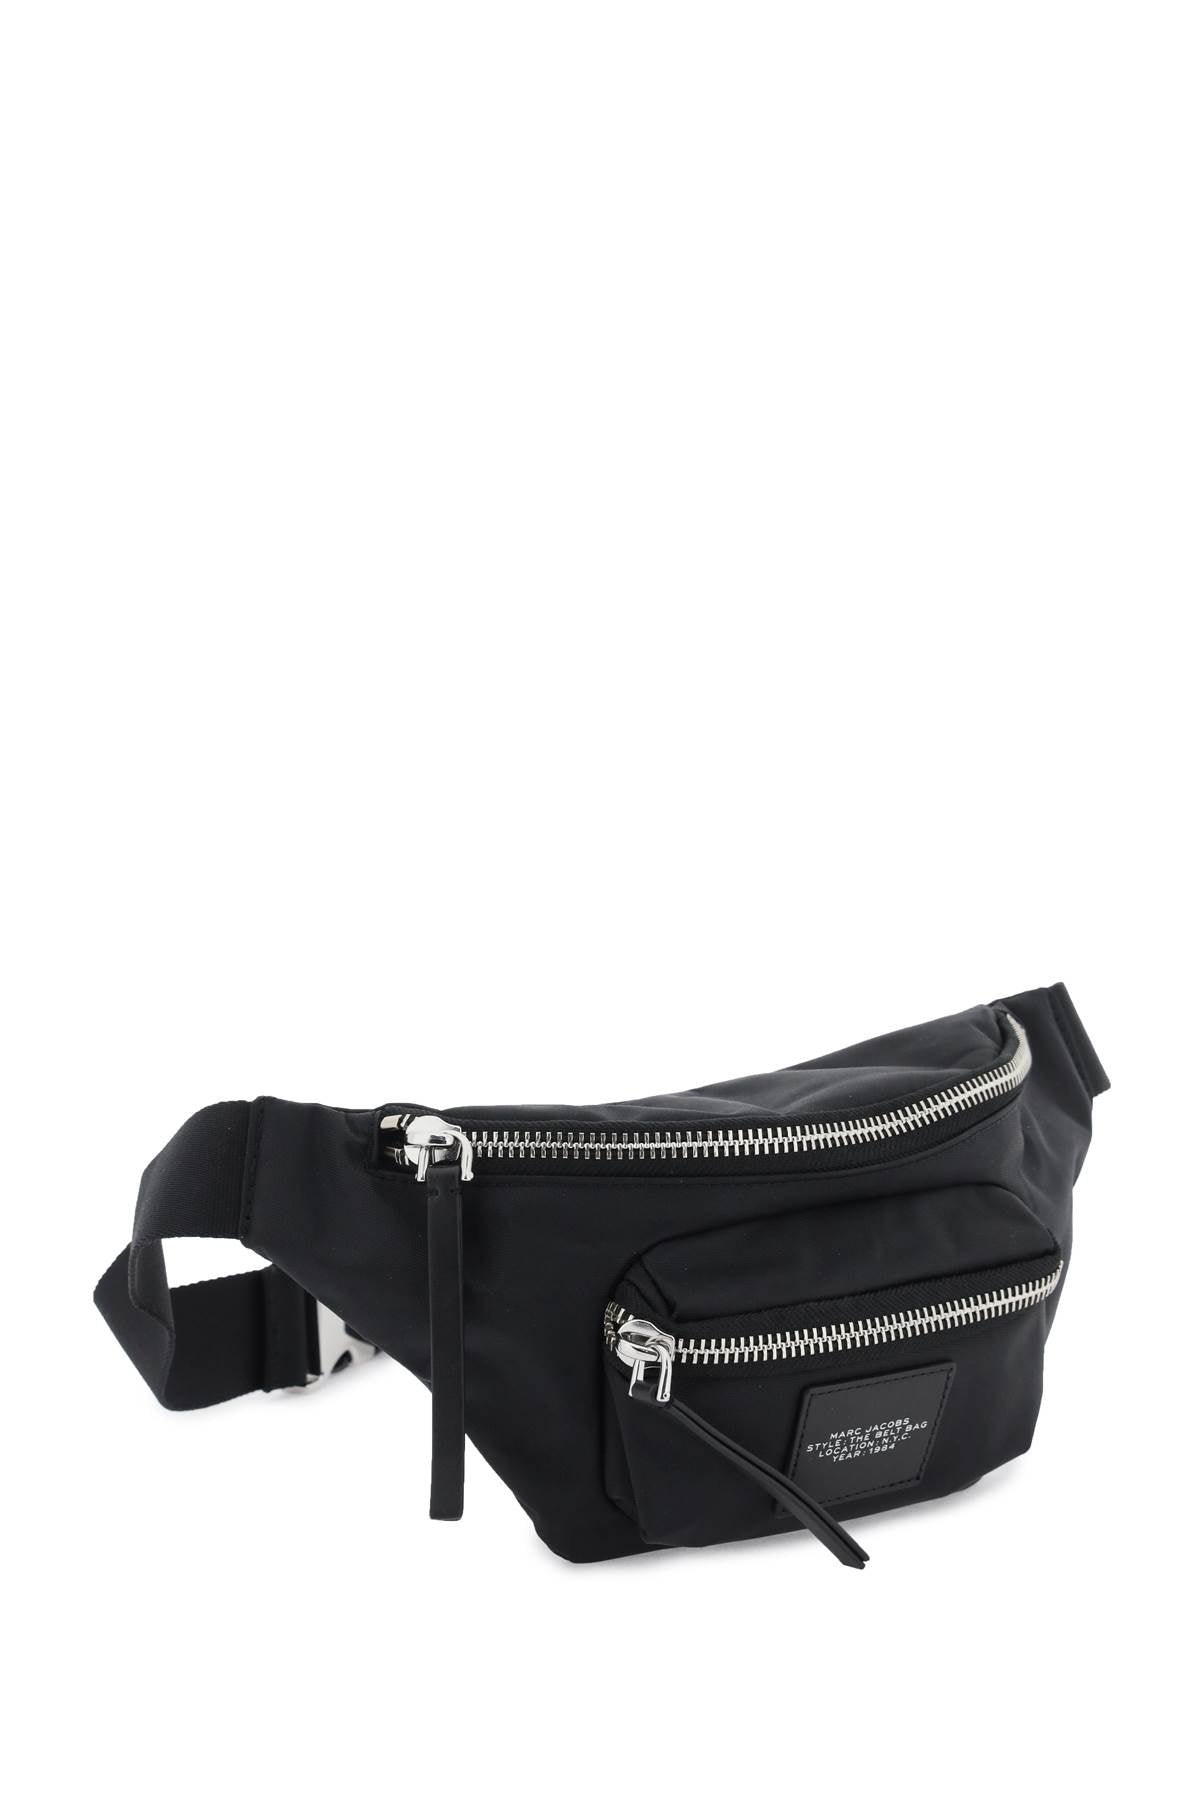 Marc Jacobs The Biker Nylon Belt Bag   Black